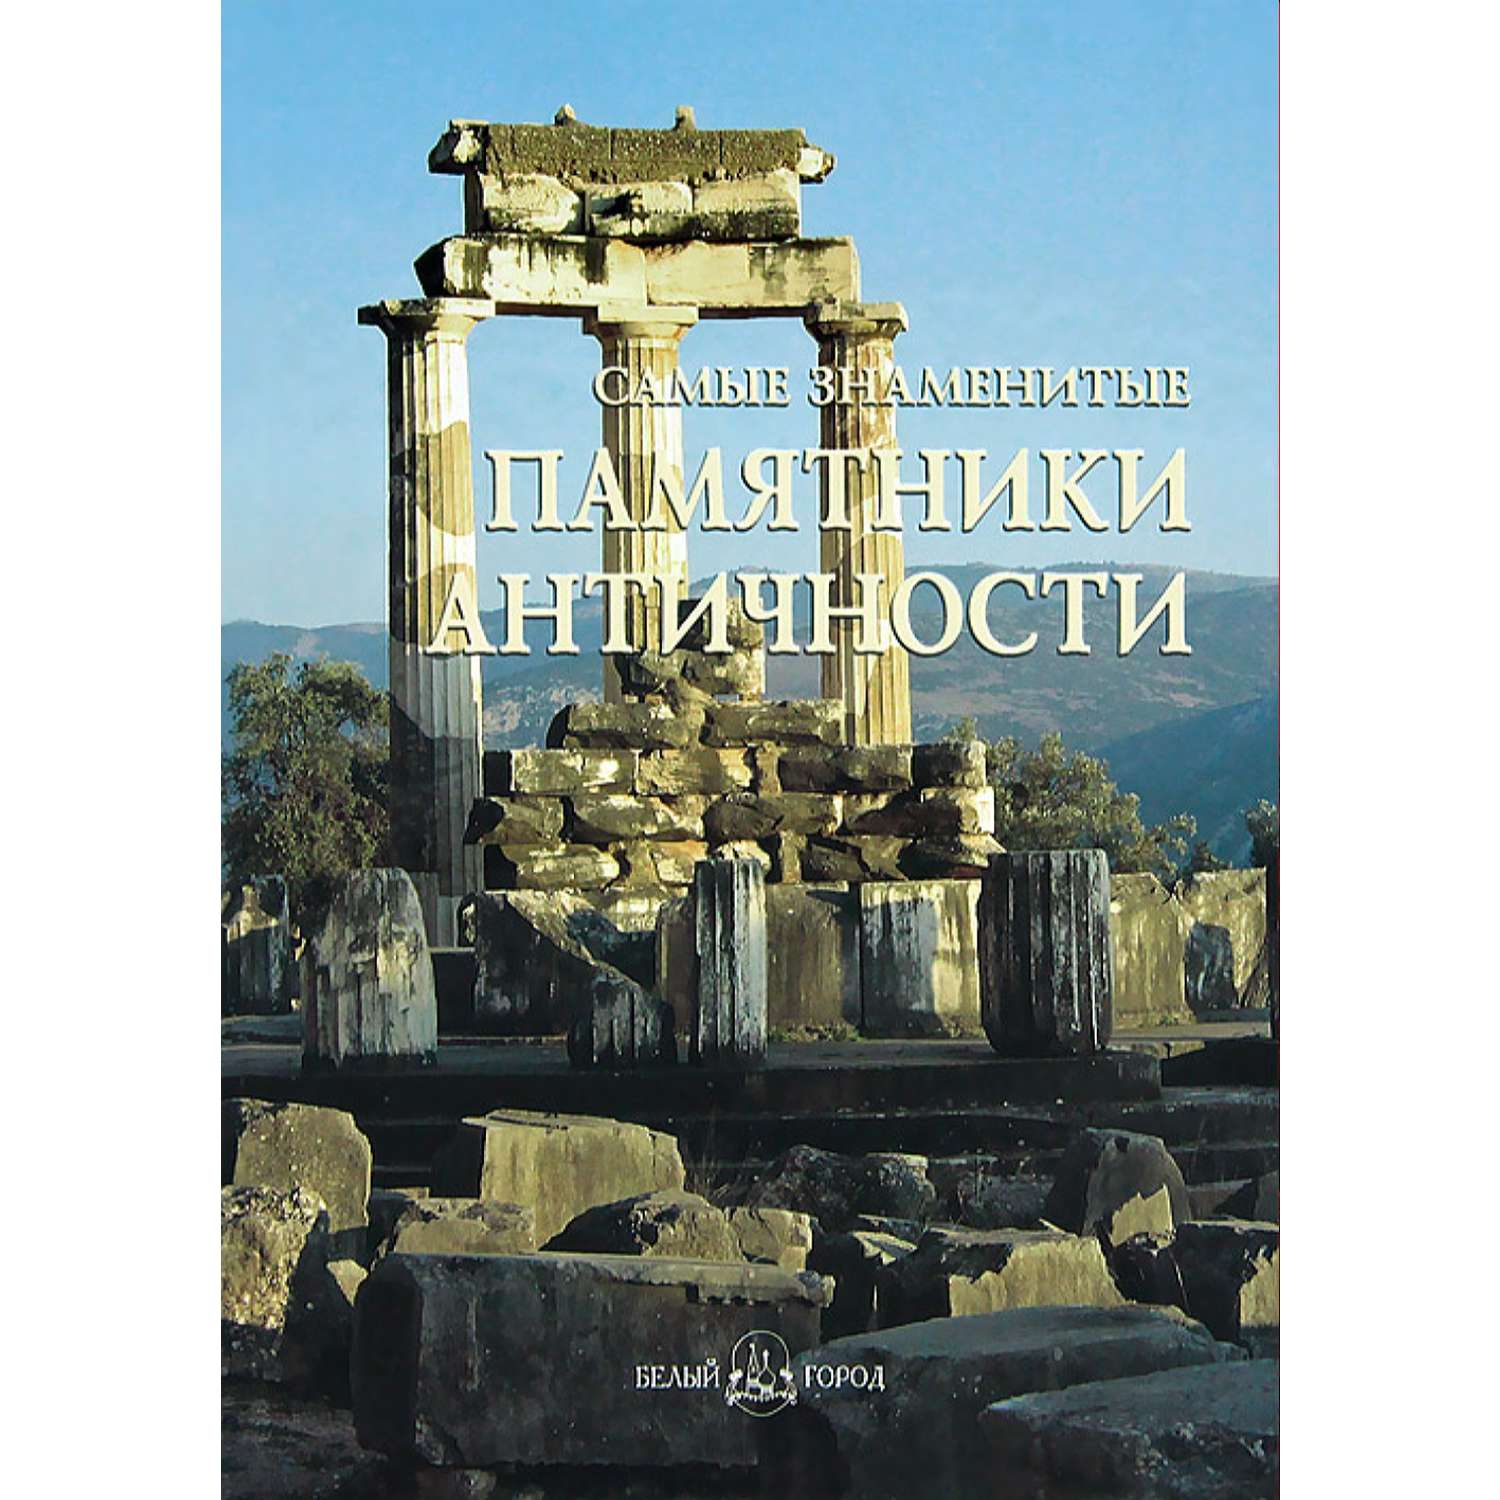 Книга Белый город Самые знаменитые памятники античности - фото 1